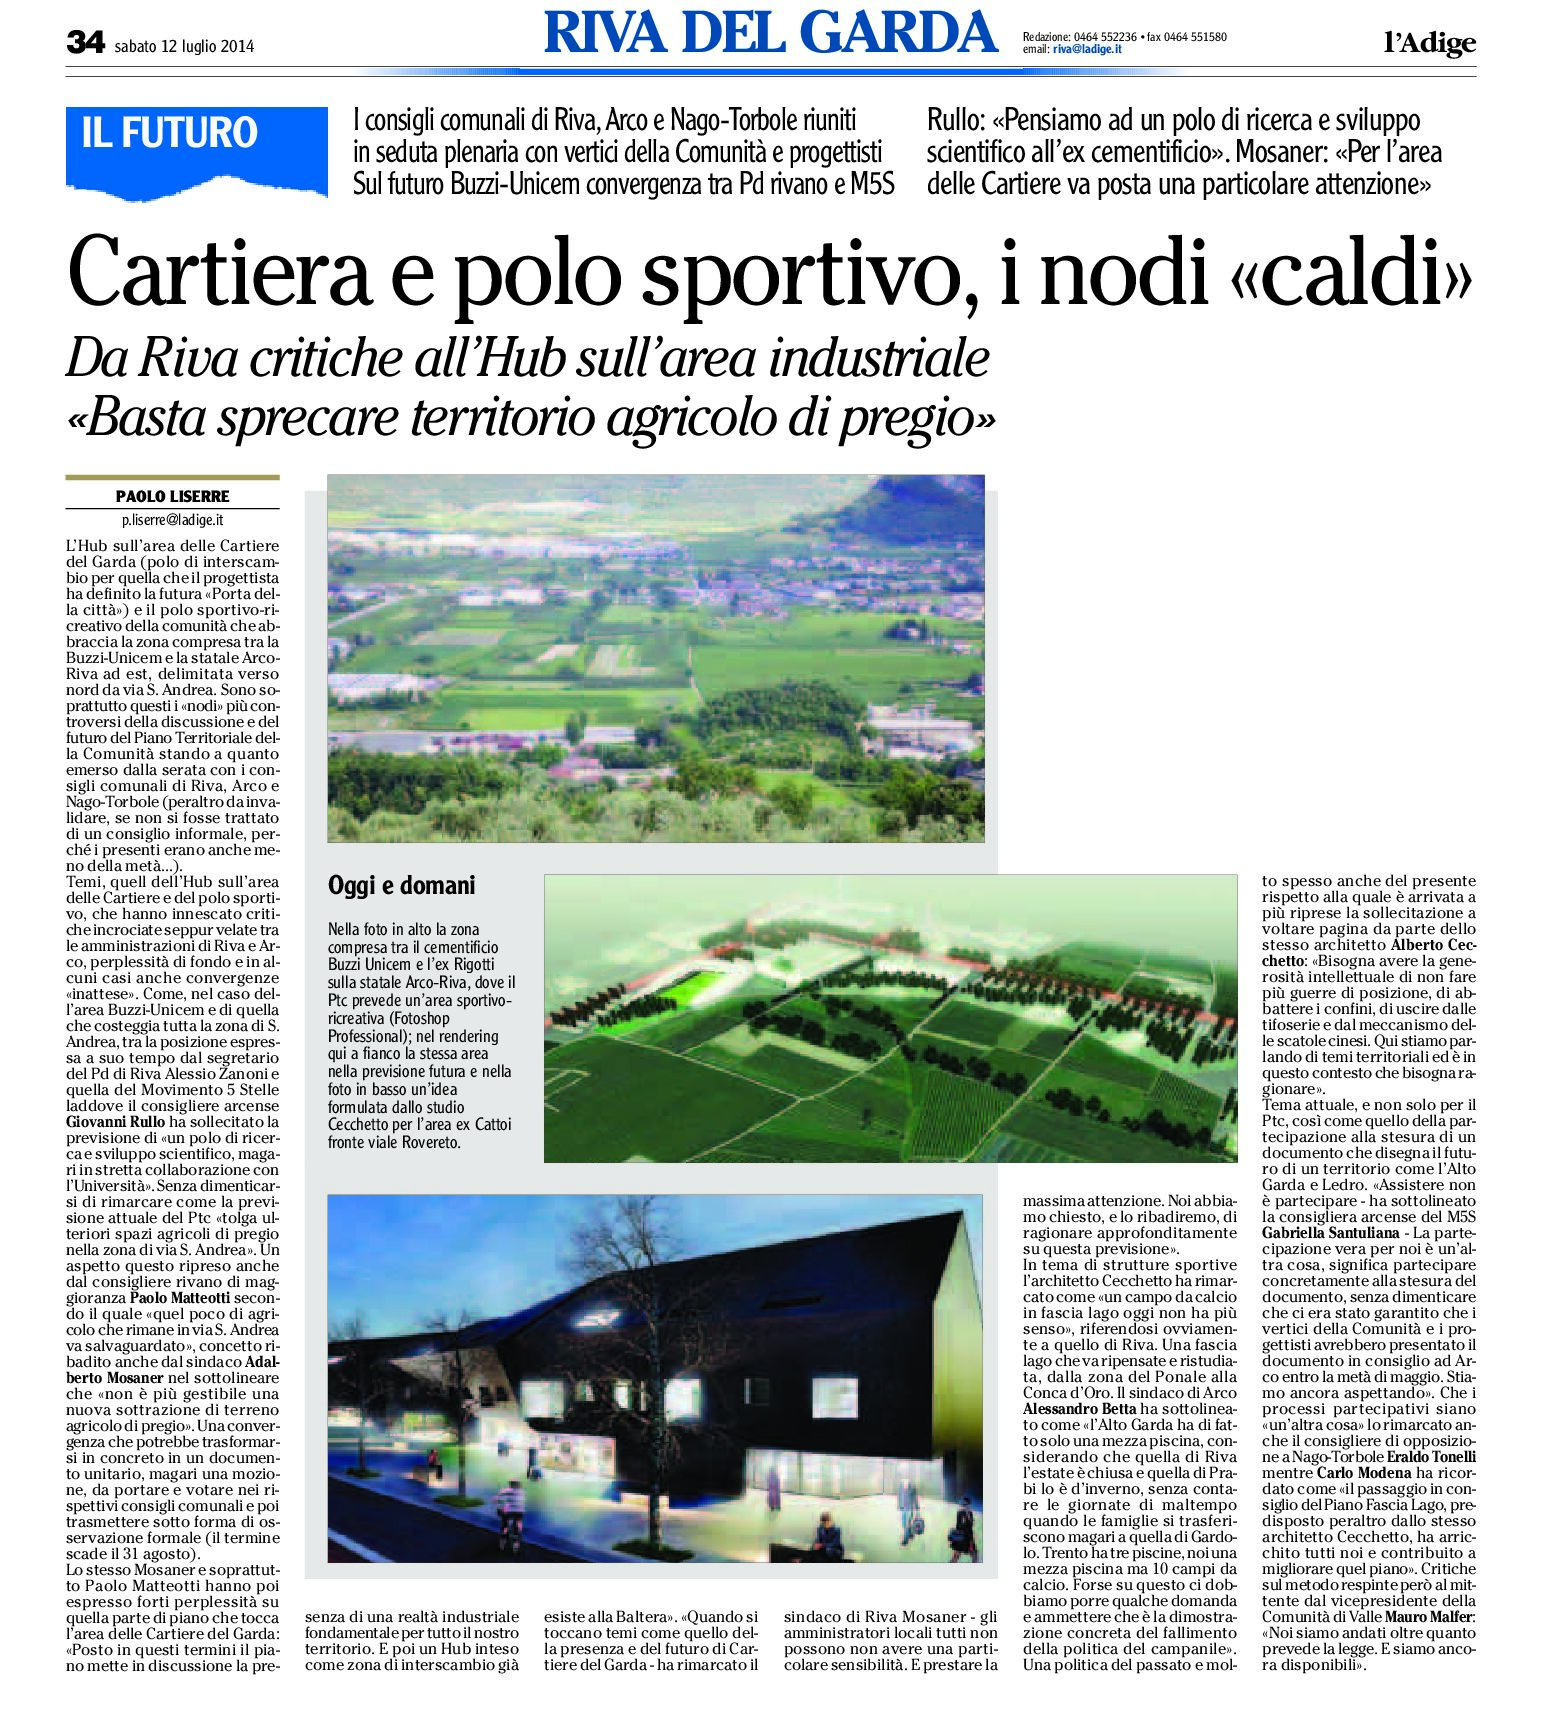 Riva, Arco: hub sull’area delle Cartiere e del polo sportivo